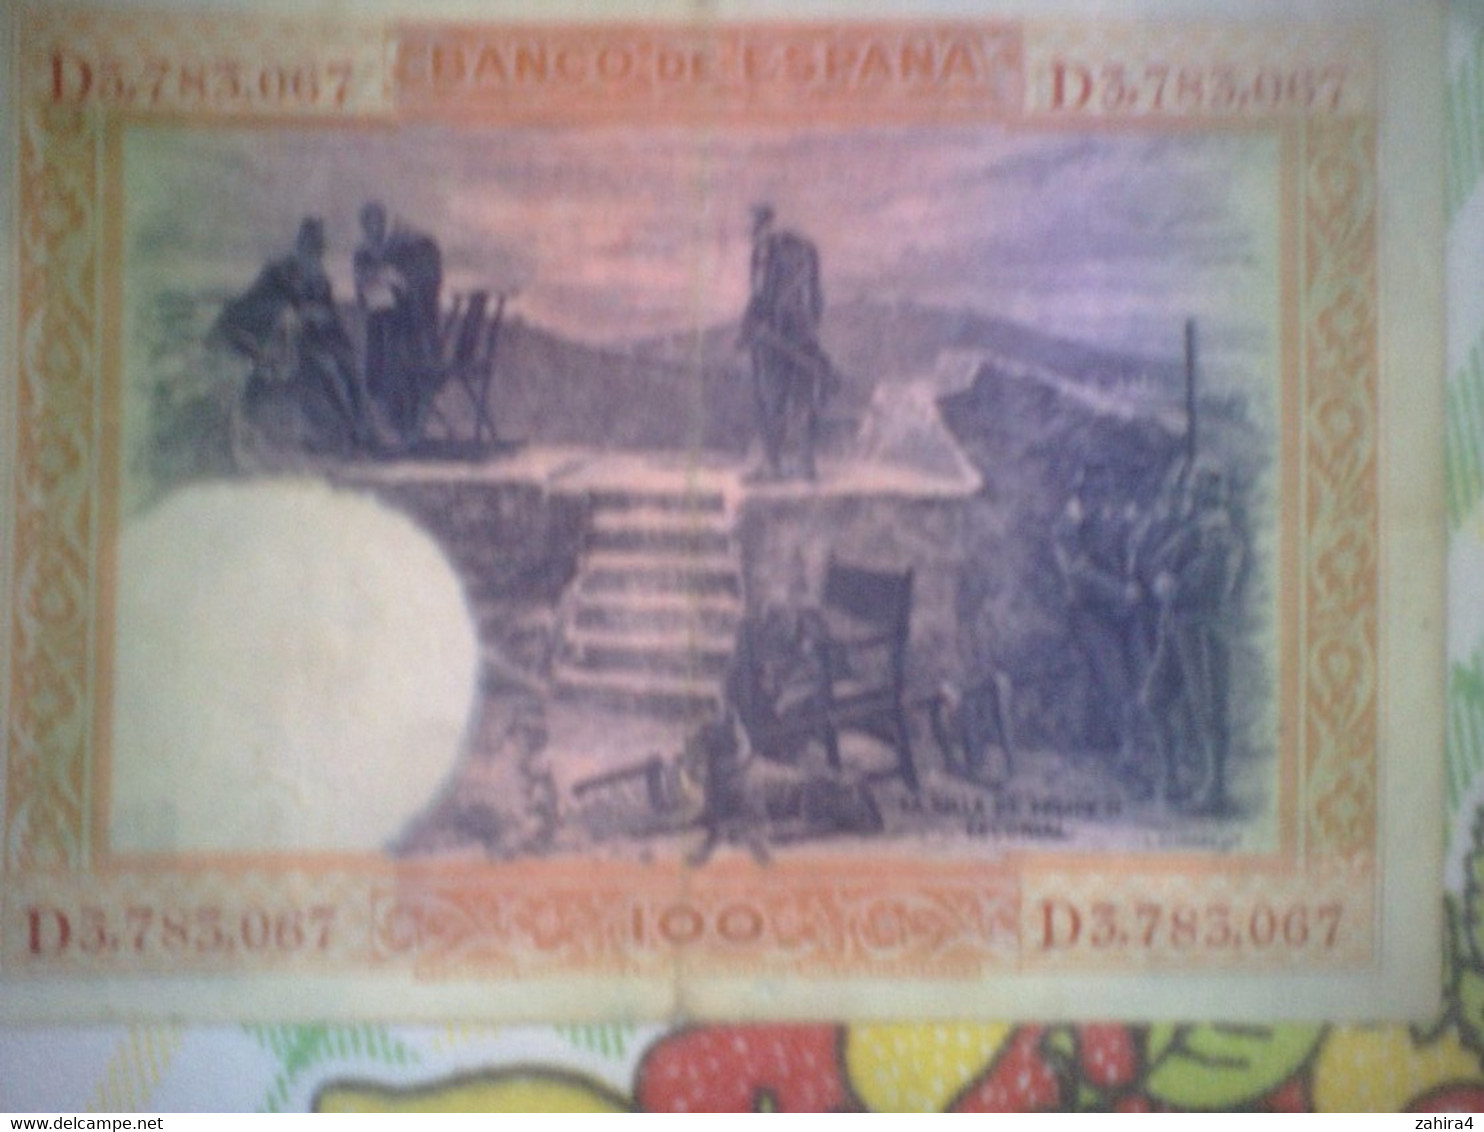 El Banco De Espana 100 Para Al Portador Cien Pesetas - Felipe II - D3,783,067 - 100 Peseten